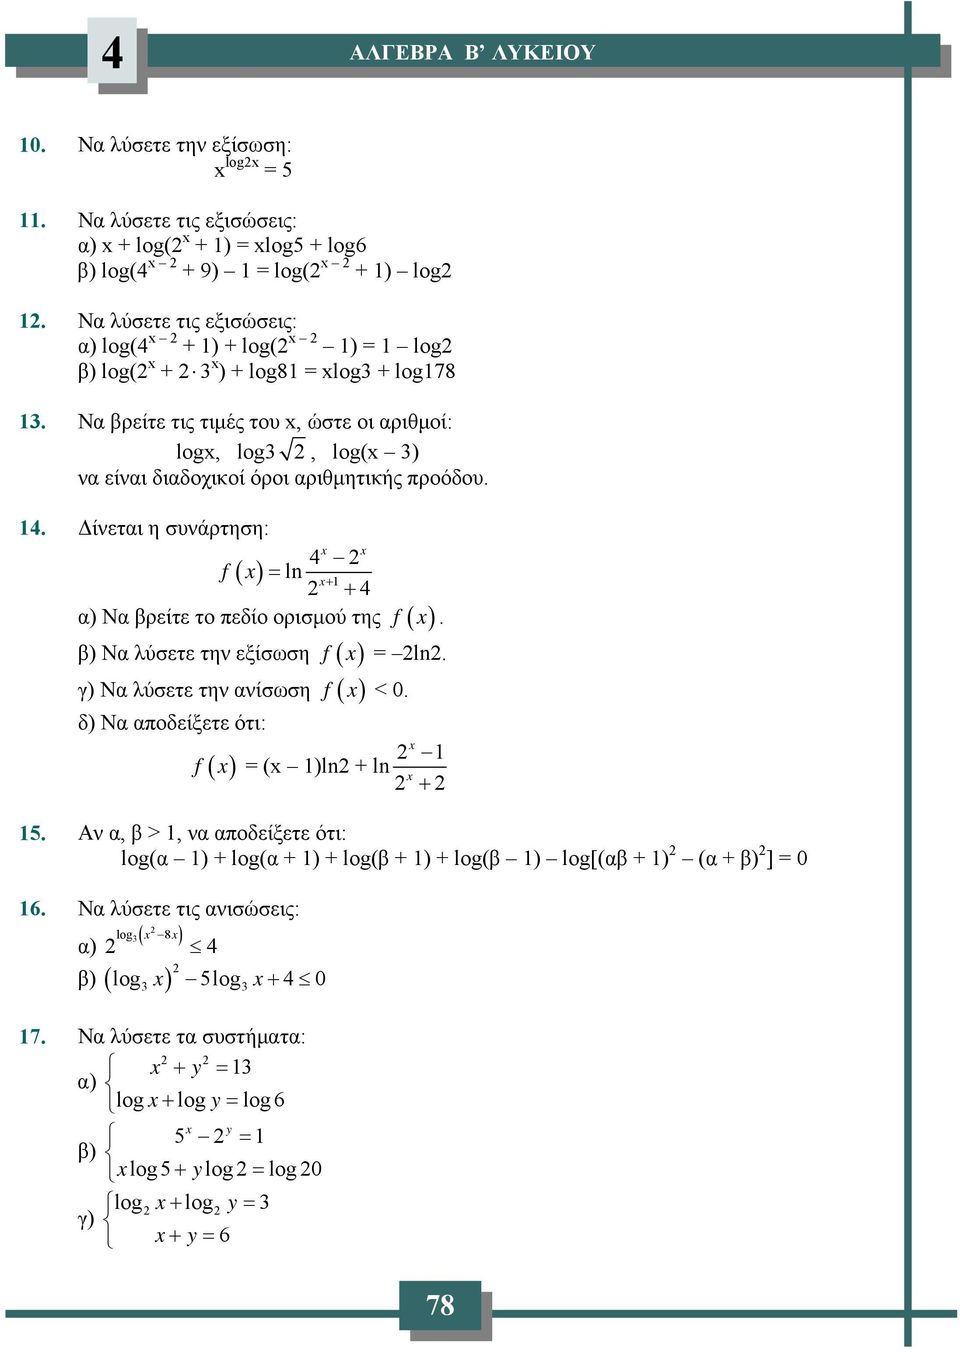 . Δίνετι η συνάρτηση: f ( ) ln + + ) Ν βρείτε το πεδίο ορισμού της f. β) Ν λύσετε την εξίσωση f ln. γ) Ν λύσετε την νίσωση f < 0.